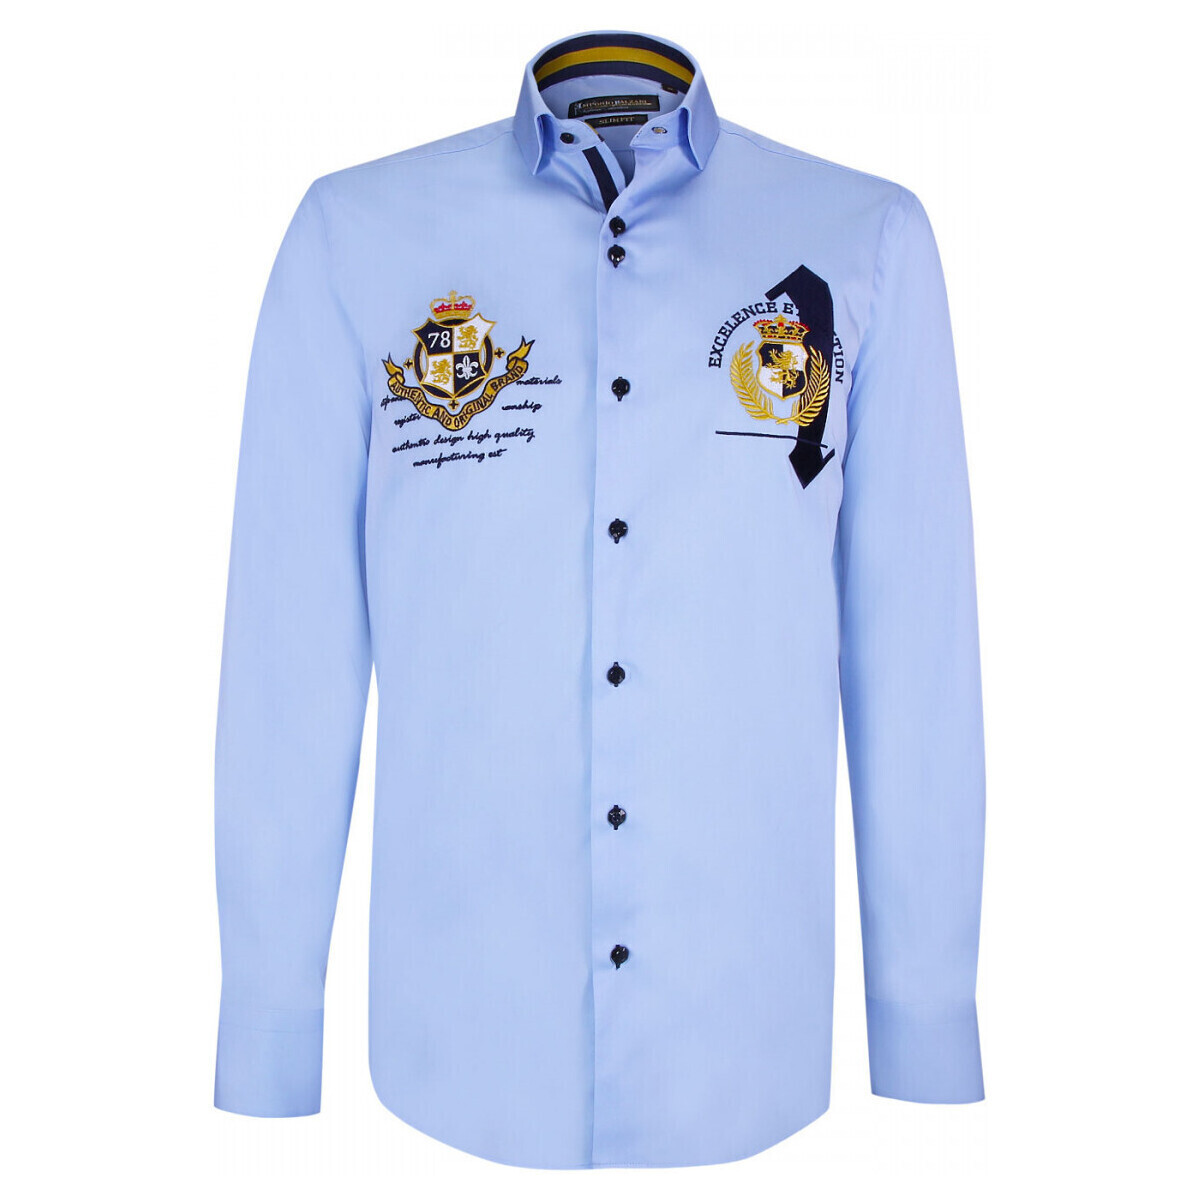 Vêtements Homme Chemises manches longues Emporio Balzani chemise cintree a broderies uno bleu Bleu